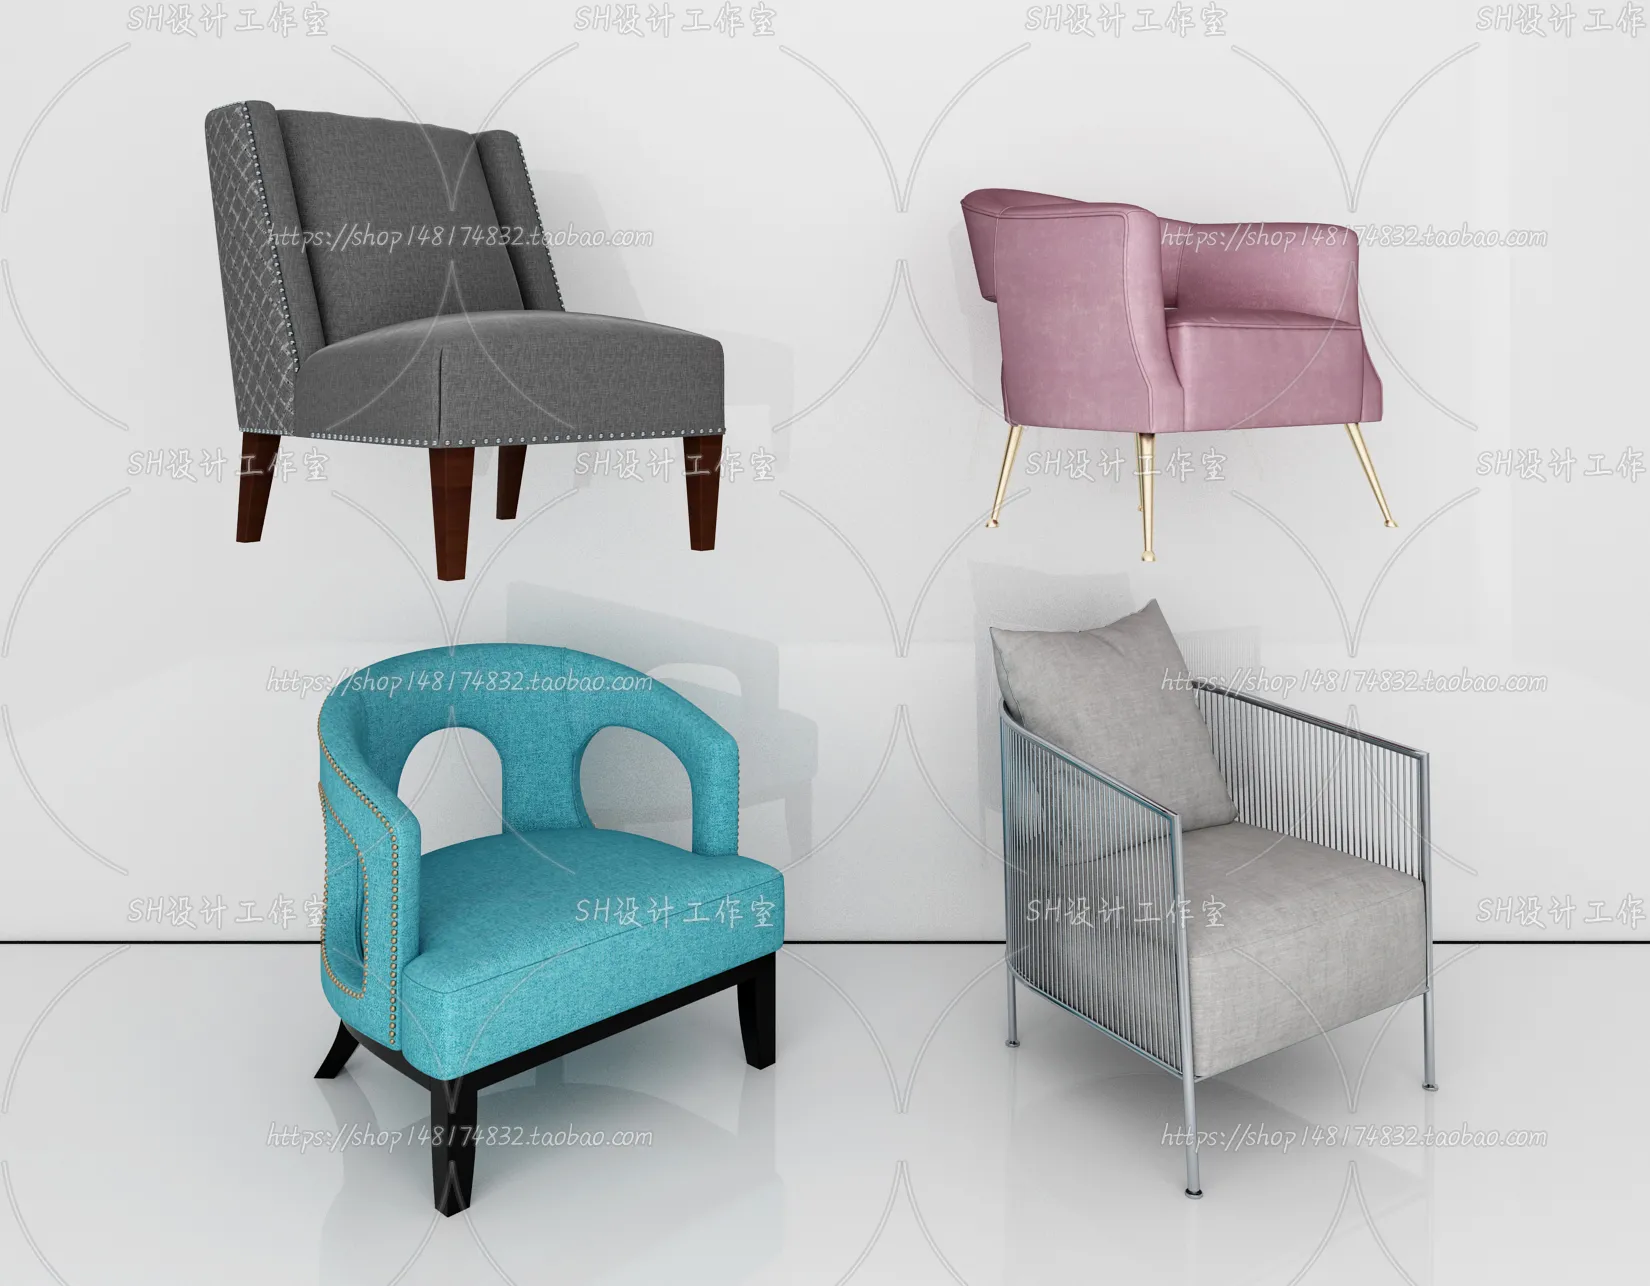 Chair – Single Chair 3D Models – 1935